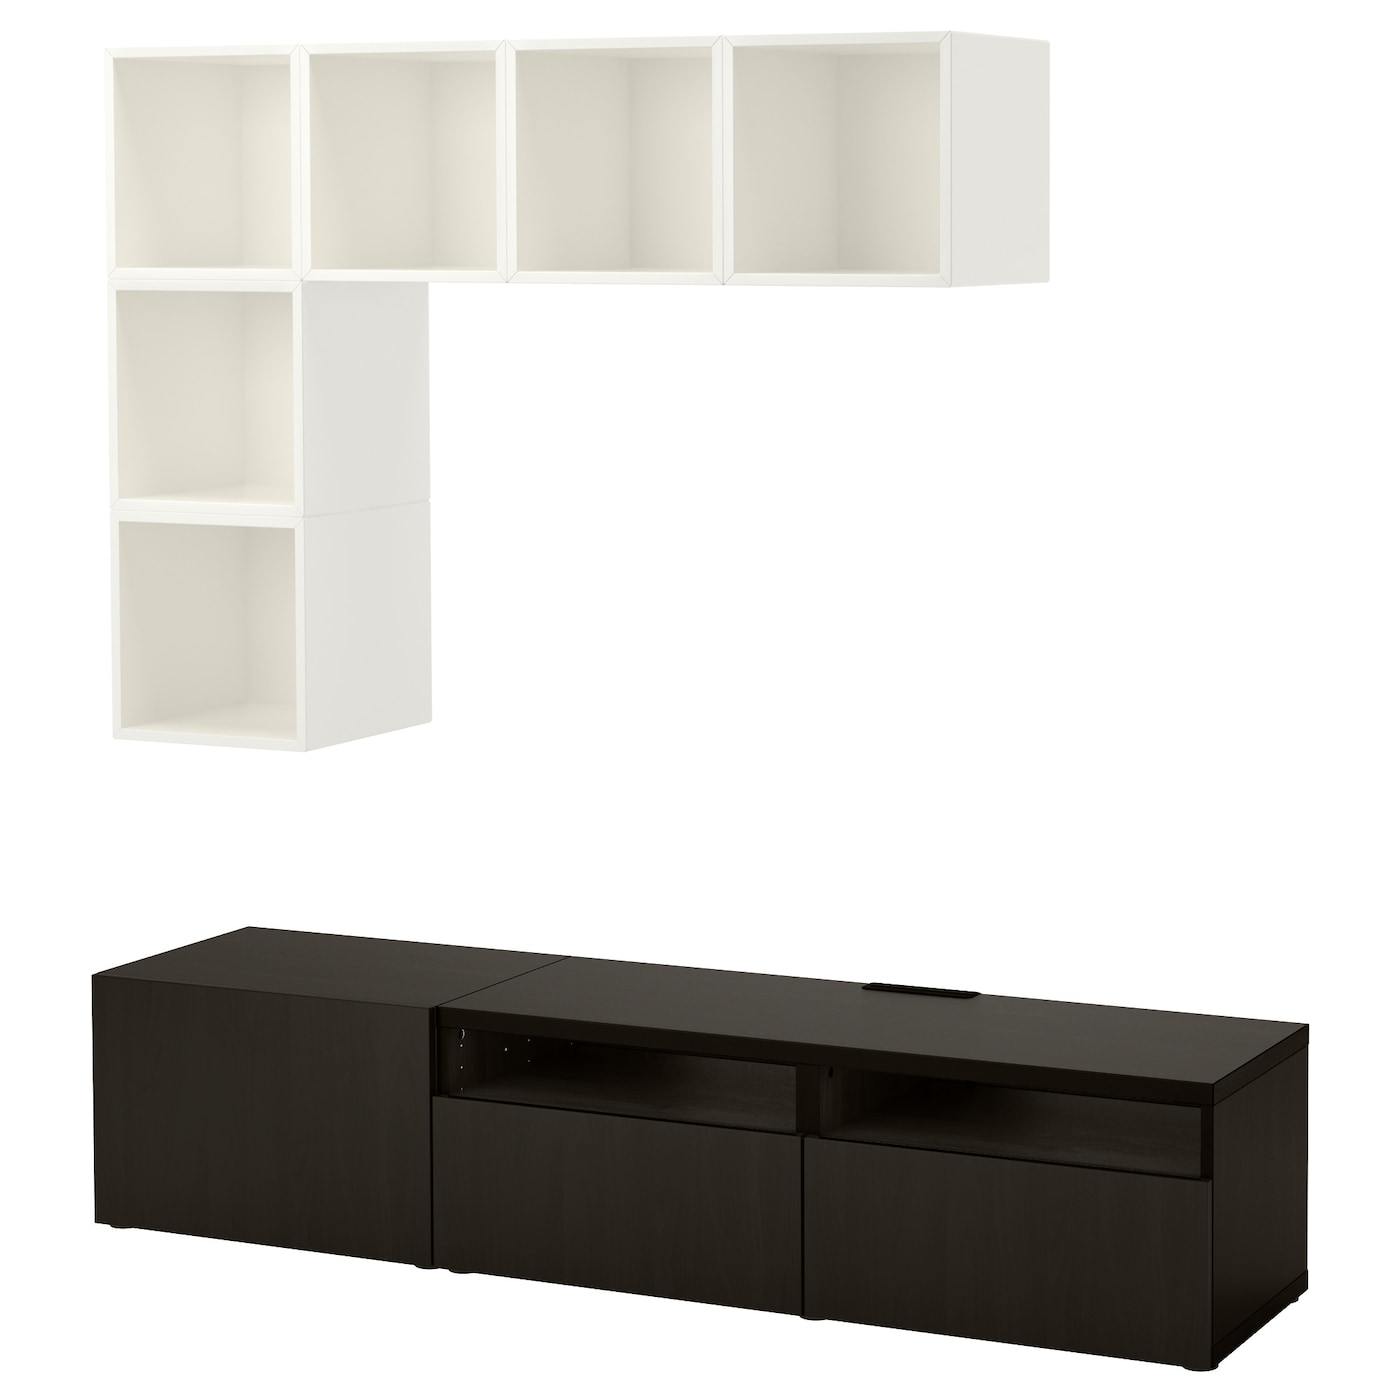 Комплект мебели д/гостиной  - IKEA BESTÅ/BESTA EKET, 180x42x170см, белый/темно-коричневый, БЕСТО ЭКЕТ ИКЕА